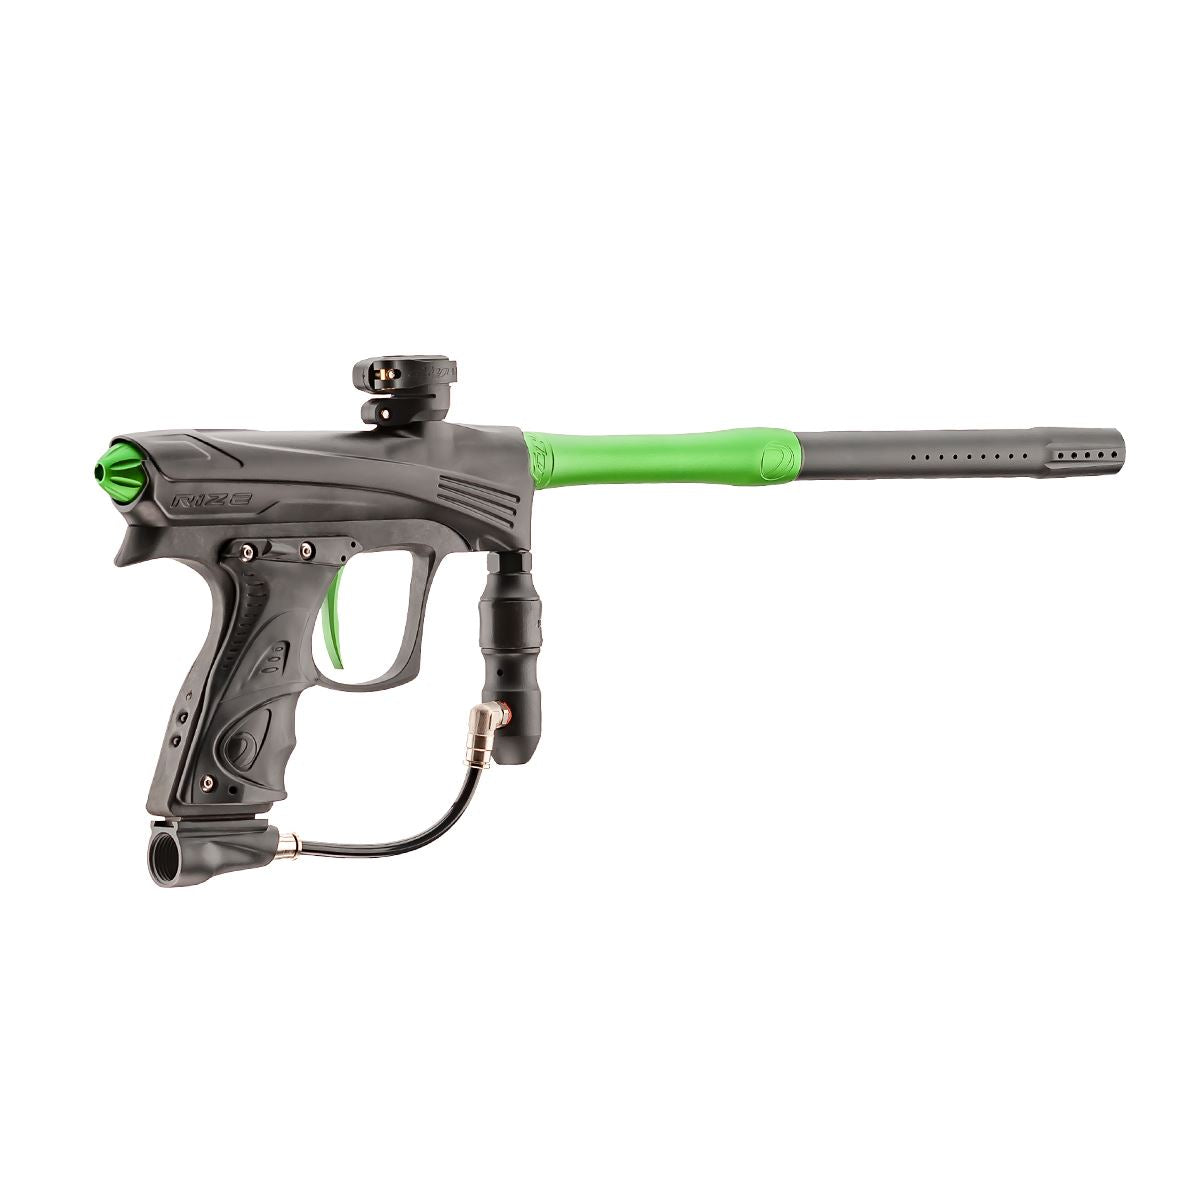 Dye Rize CZR Paintball Gun Marker  - Black/Lime Dye